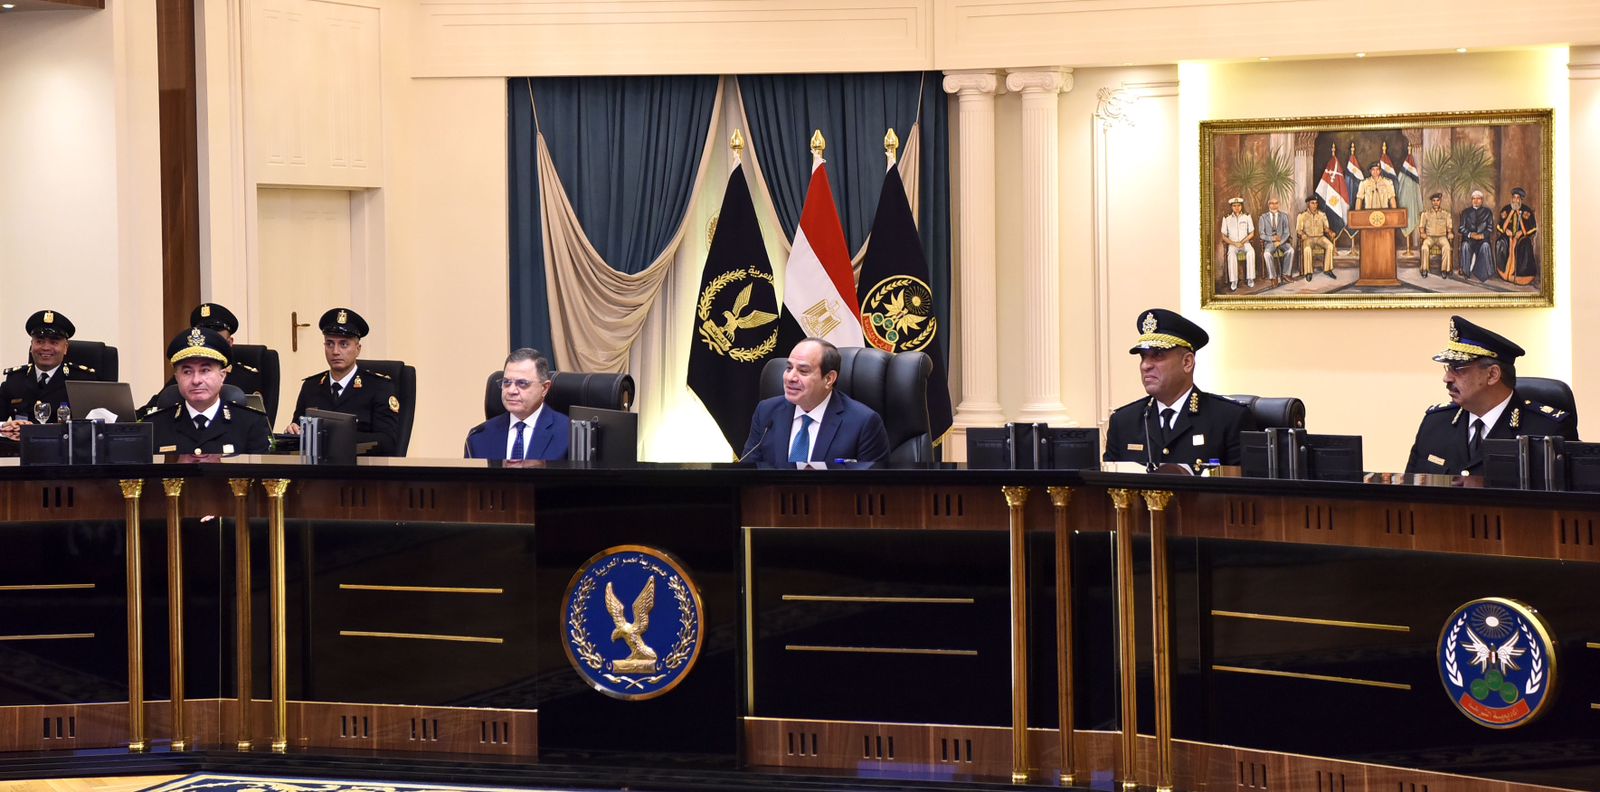 الرئيس السيسي يشهد اختبارات كشف الهيئة للطلبة المتقدمين للالتحاق بكلية الشرطة